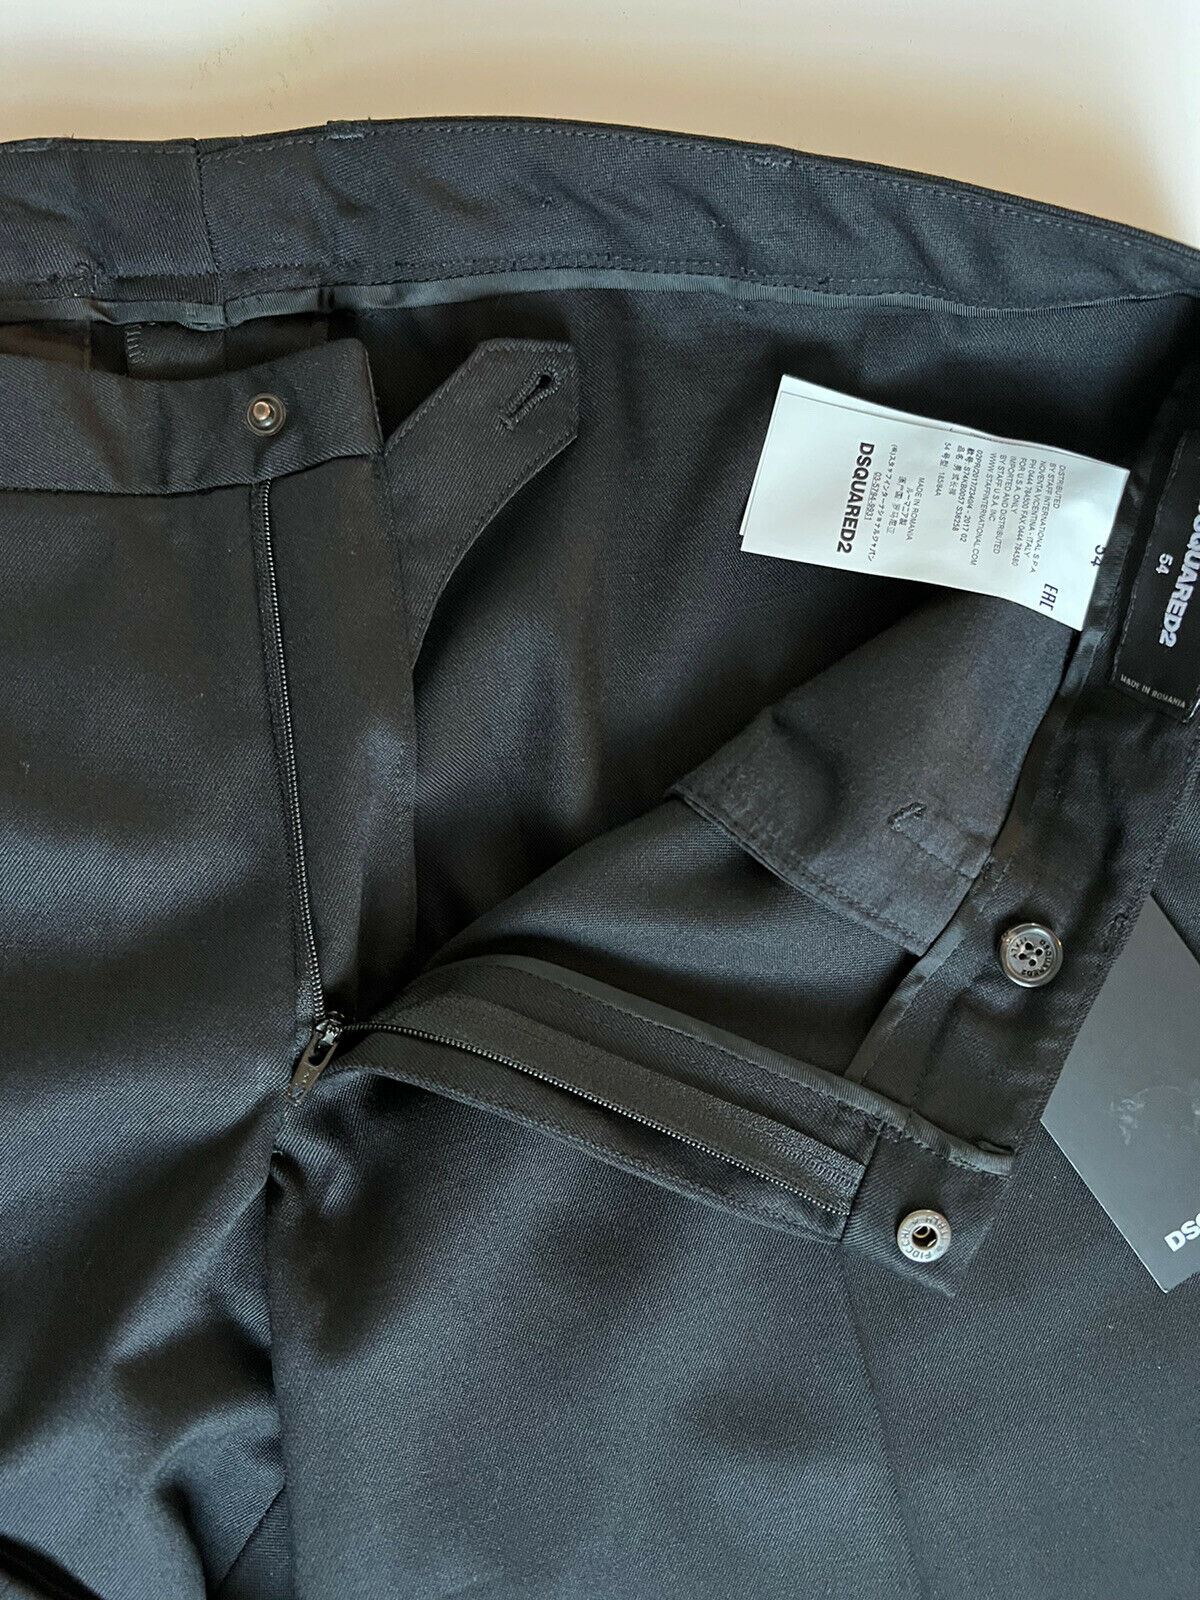 NWT 690 долларов США DSQUARED2 Мужские шерстяные классические брюки черного цвета, размер 38, США (54 евро) 